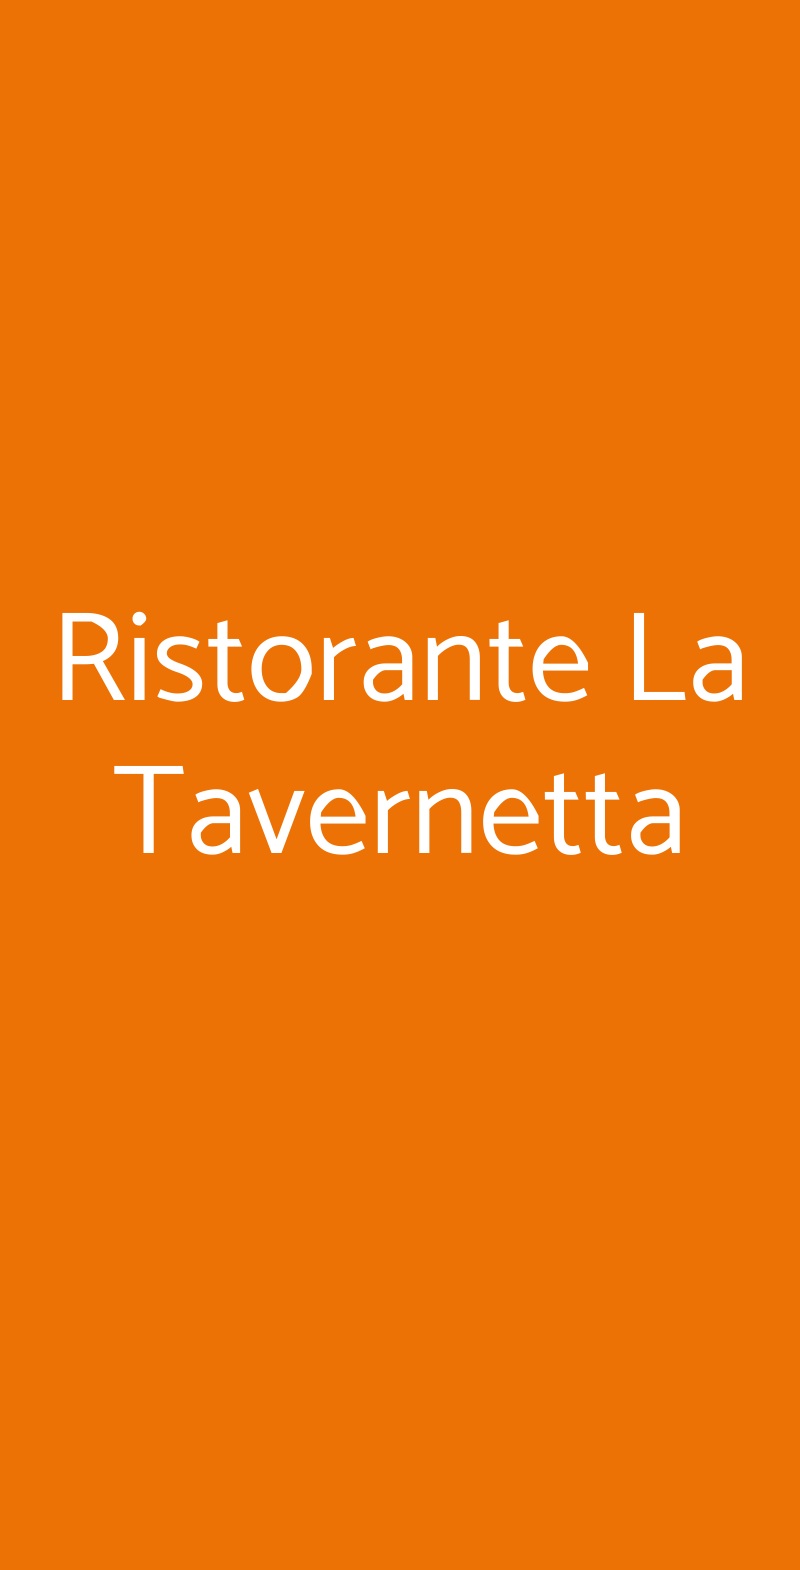 Ristorante La Tavernetta Recco menù 1 pagina